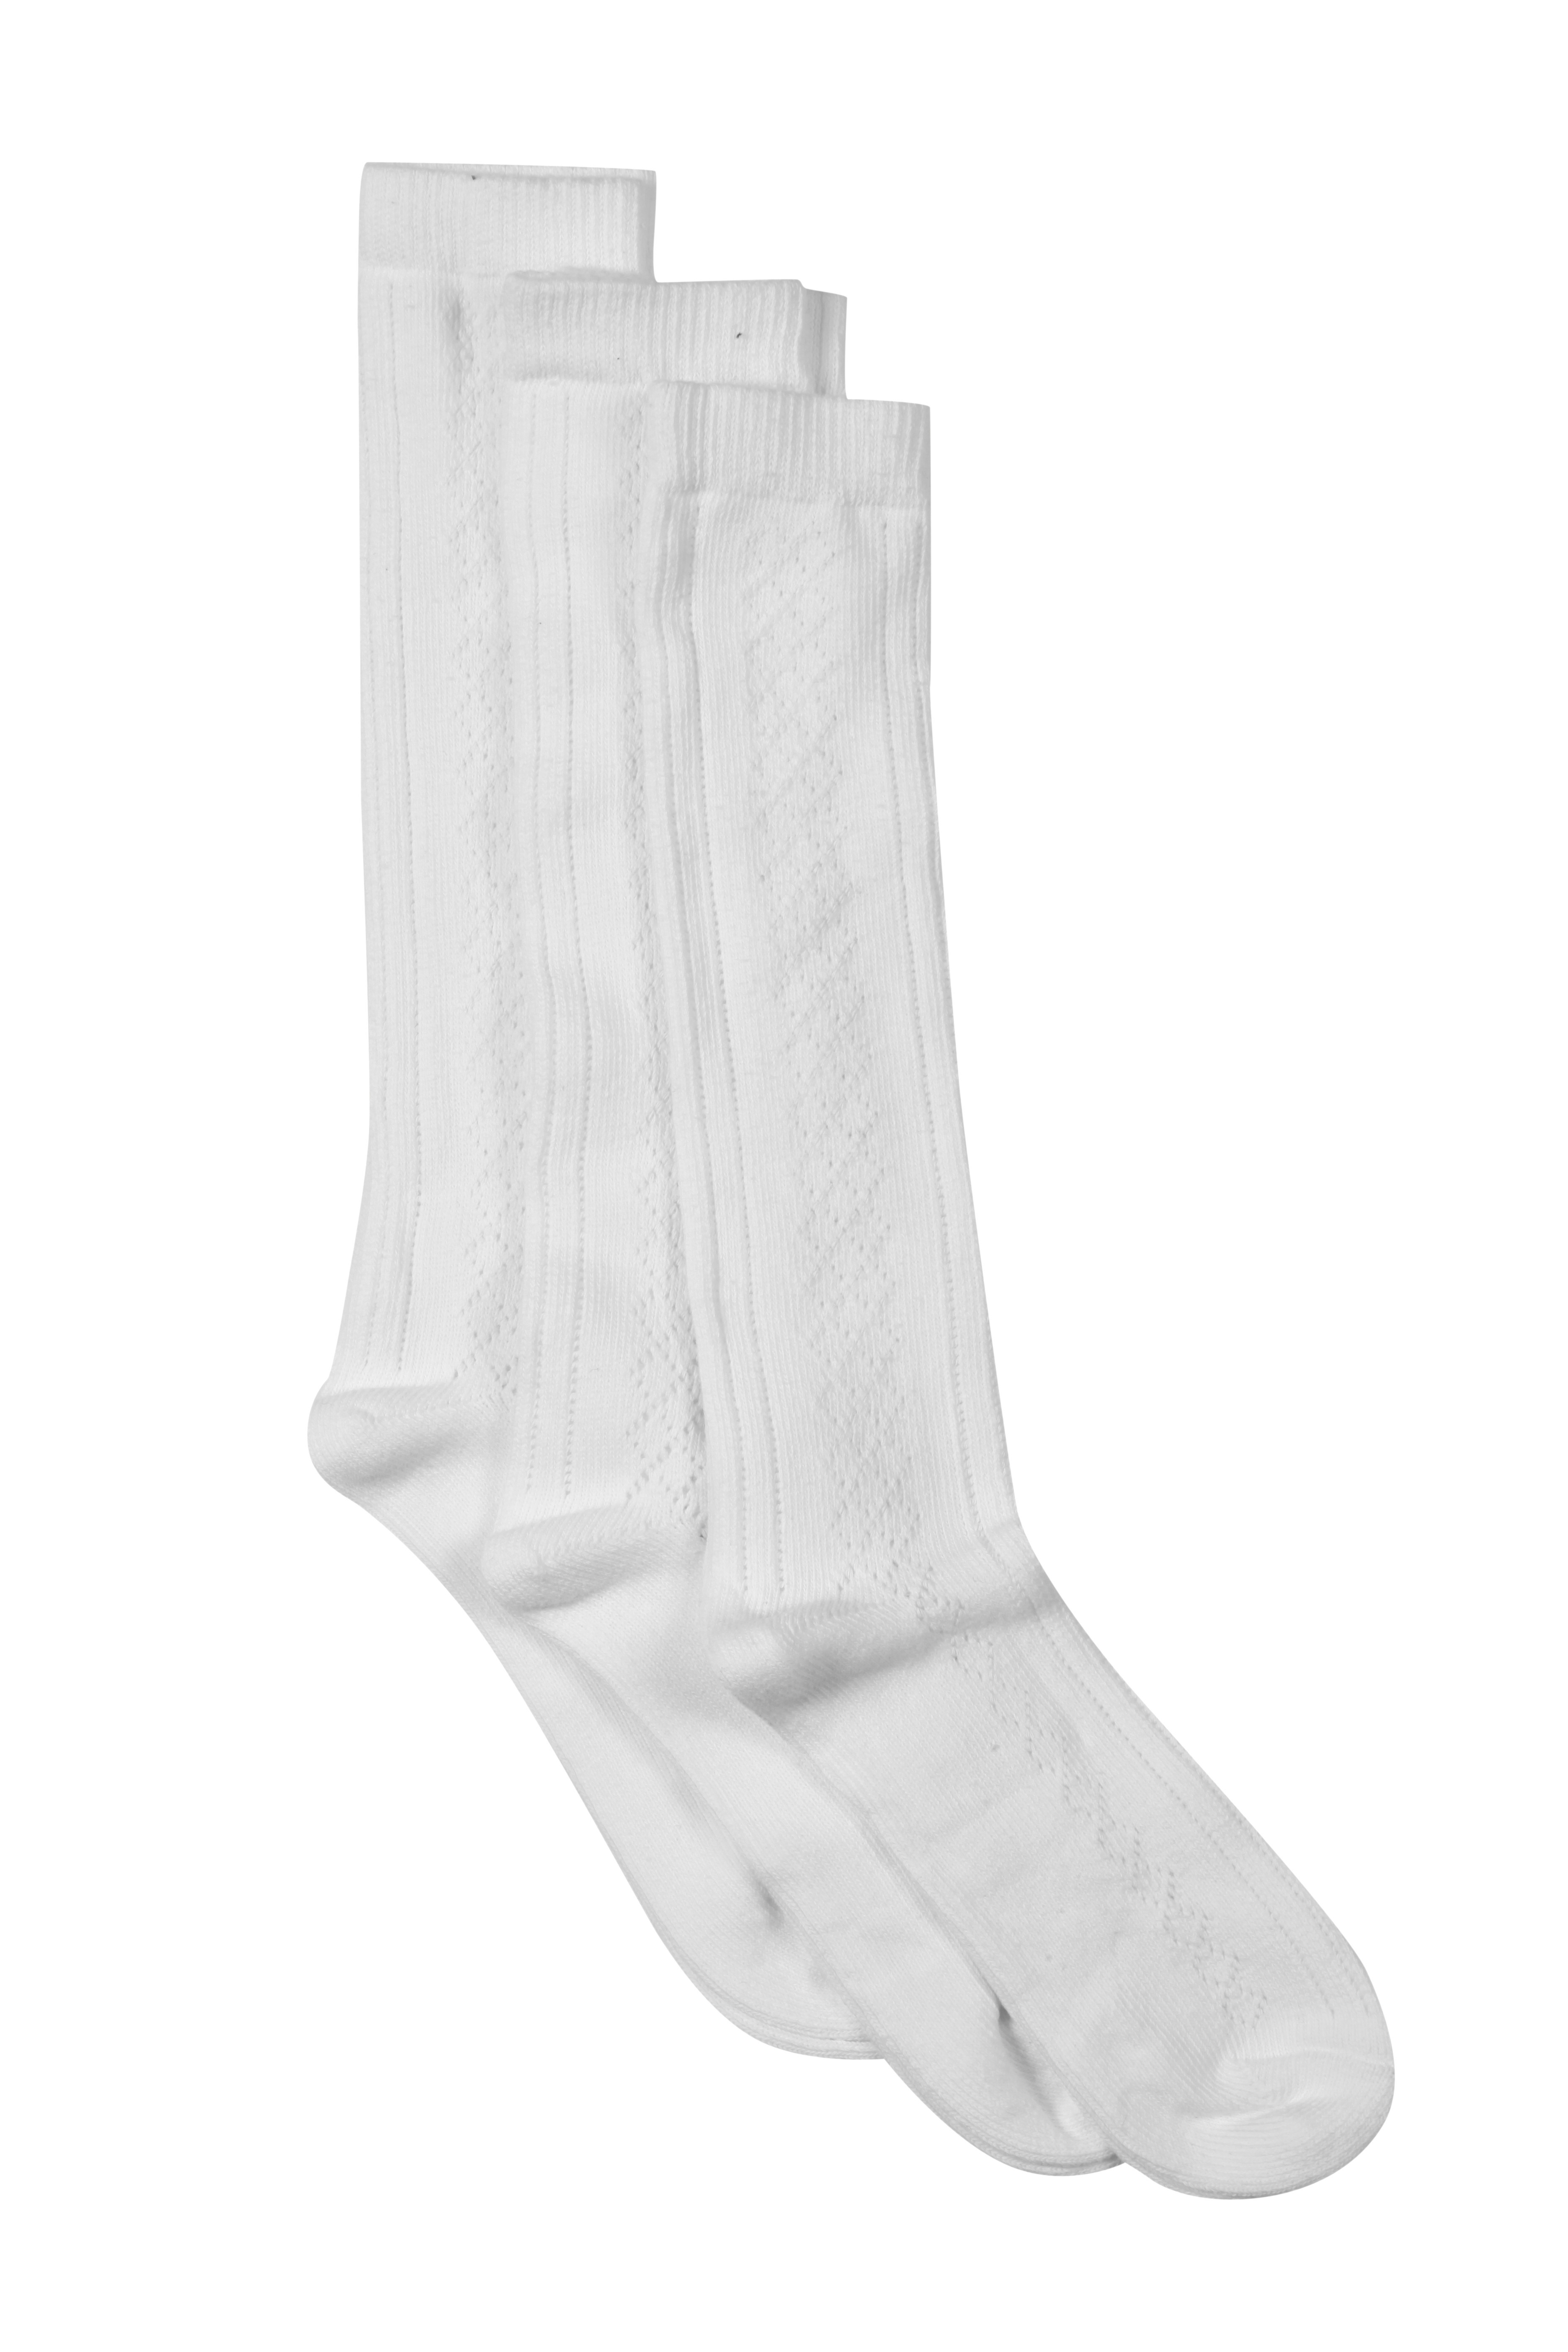 Girls White Knee High Pelerine School Socks